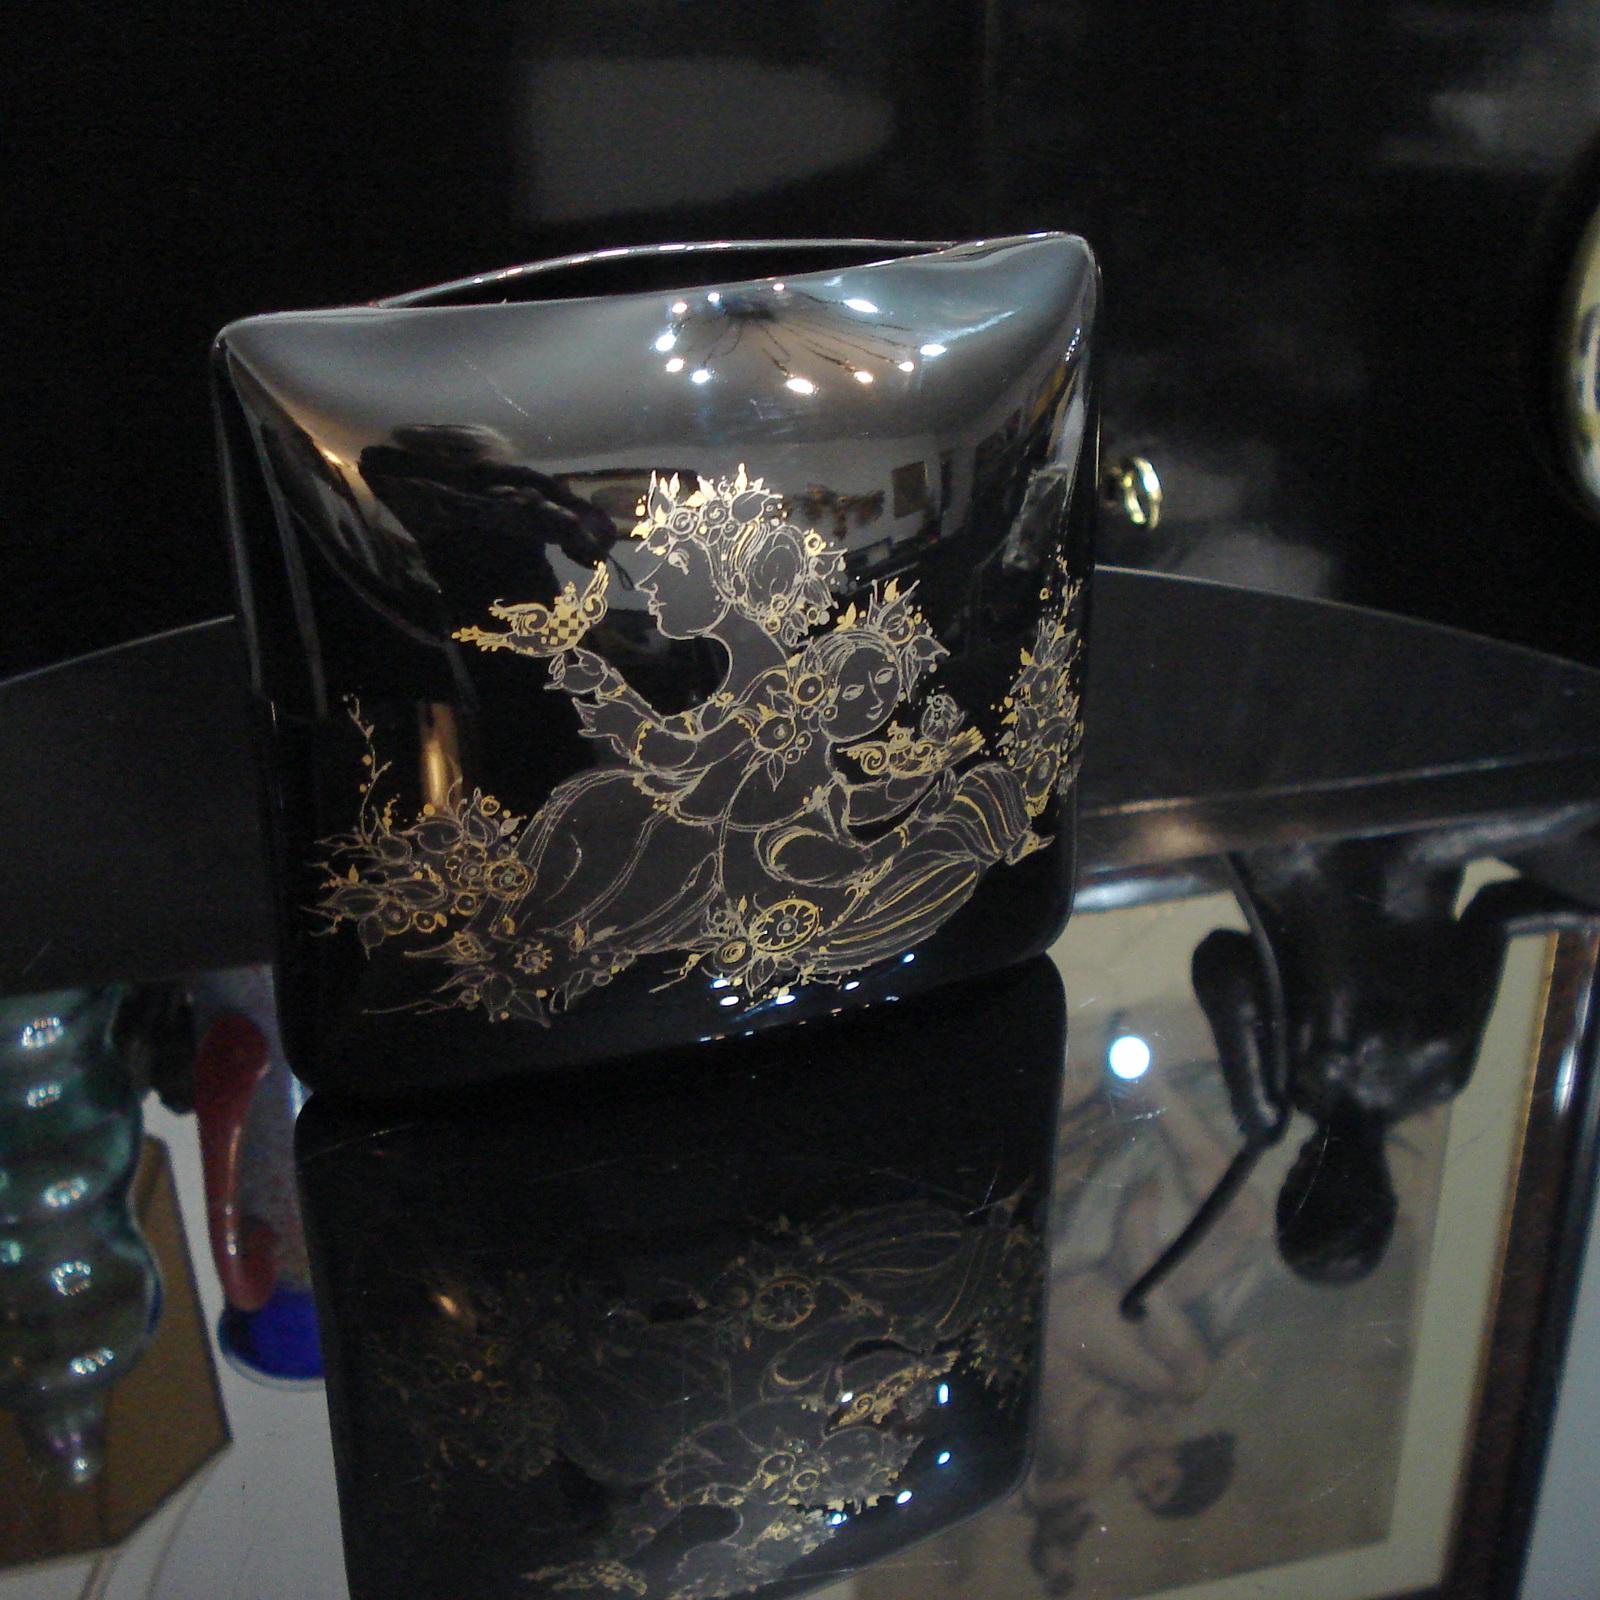 Wunderschönes schwarzes Porzellan, reich verziert mit goldener Handmalerei, entworfen von Björn Wiinblad für Rosenthal, ca. 1970er Jahre.
Die kissenförmige Vase ist der Blickfang in Ihrem Interieur.
Ausgezeichneter Zustand.
Abmessungen: 16,5 x